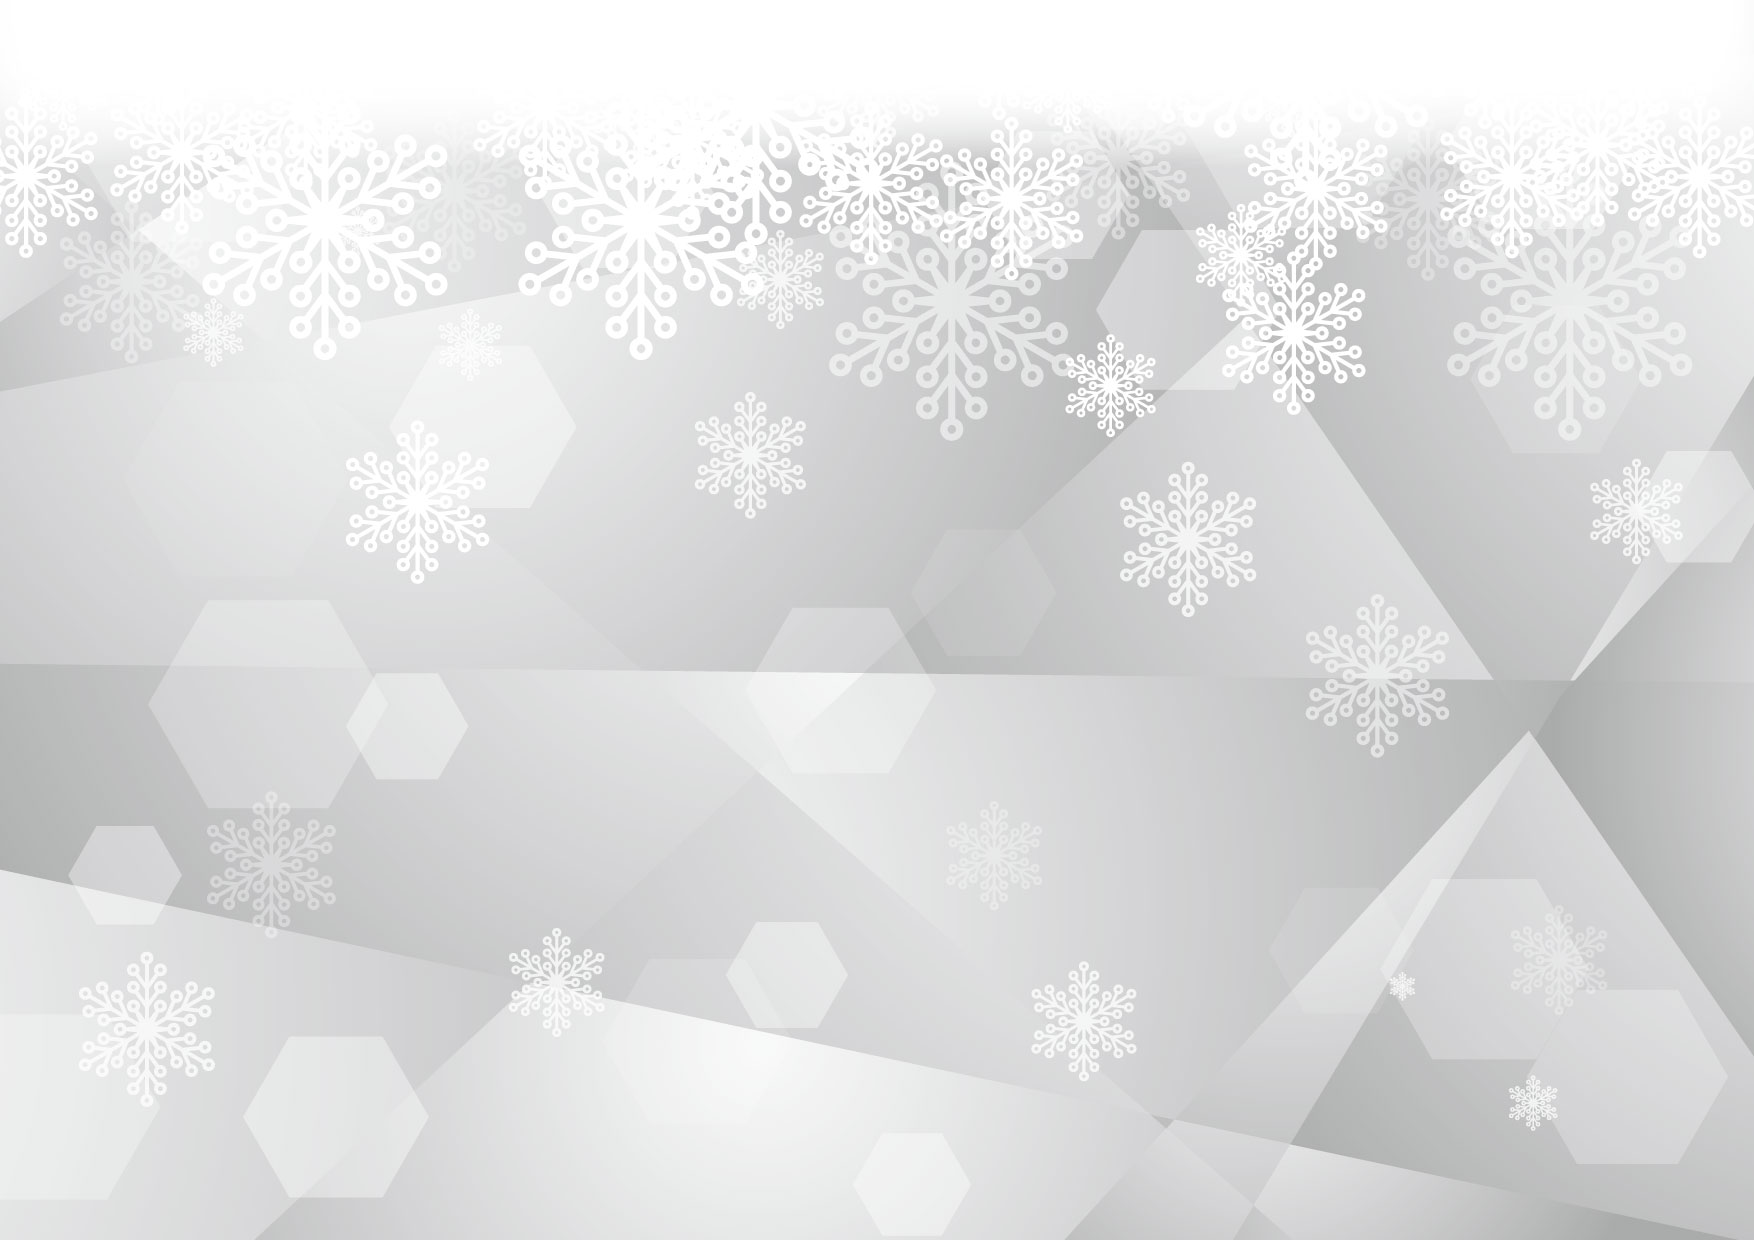 可愛いイラスト無料 雪の結晶 ガラス グレー 背景 Free Illustration Snow Crystal Glass Gray Background イラストダウンロード